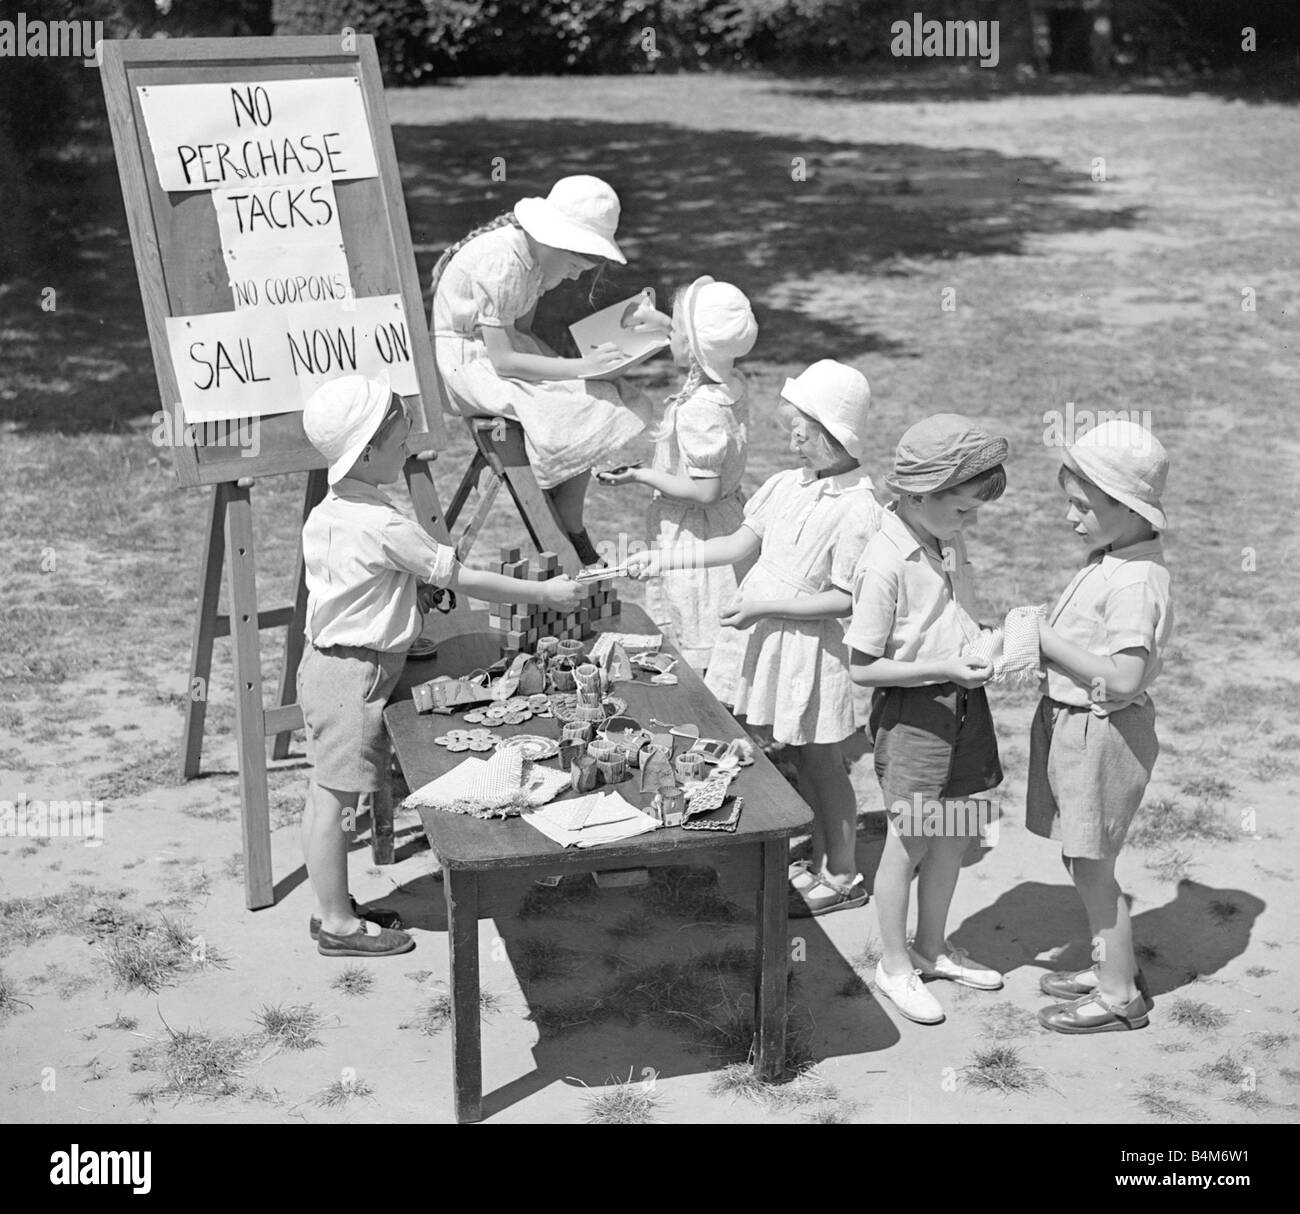 Enfants jouant boutiques au cours de l'été petit garçon debout derrière le tableau avec des marchandises organisé Sign reads No Perchase punaises aucun voile sur Coupons maintenant vers 1950 Banque D'Images